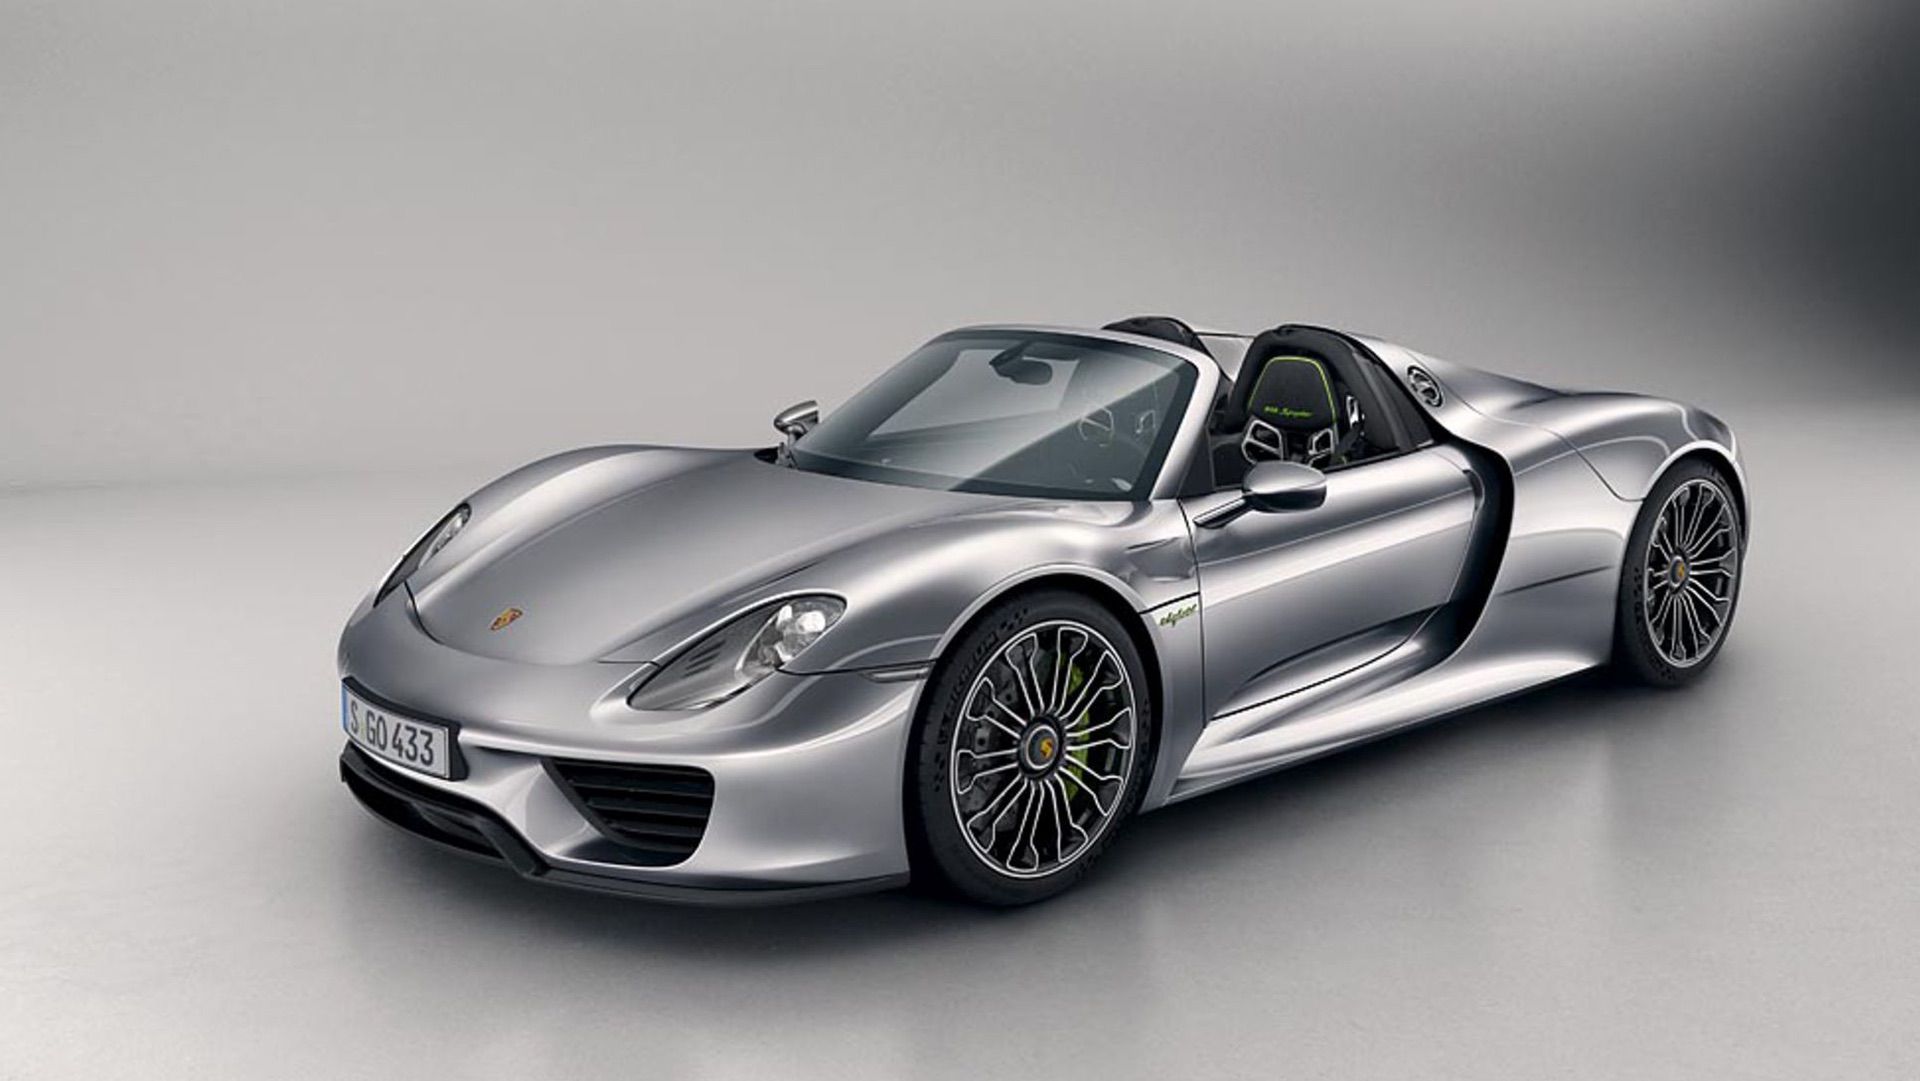 https://www.stuttcars.com/wp-content/uploads/2022/11/Race-Cars-that-Influenced-Porsche-918-Spyder-Hypercar-5.jpg